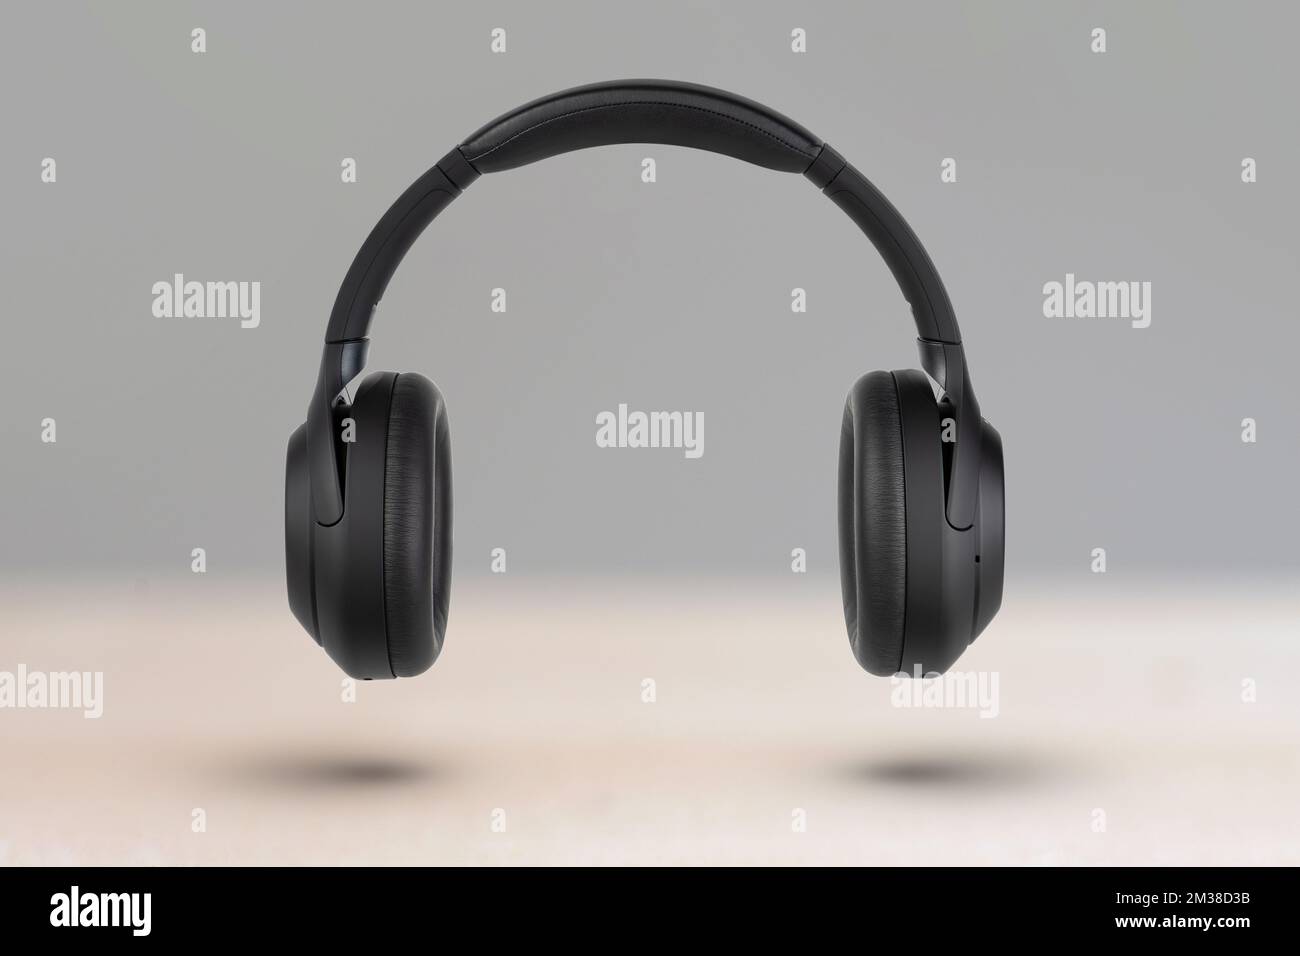 Kopfhörer auf hellem Hintergrund. Kabellose Kopfhörer in Schwarz, hohe Qualität, für Werbung oder Produktkatalog. Stockfoto